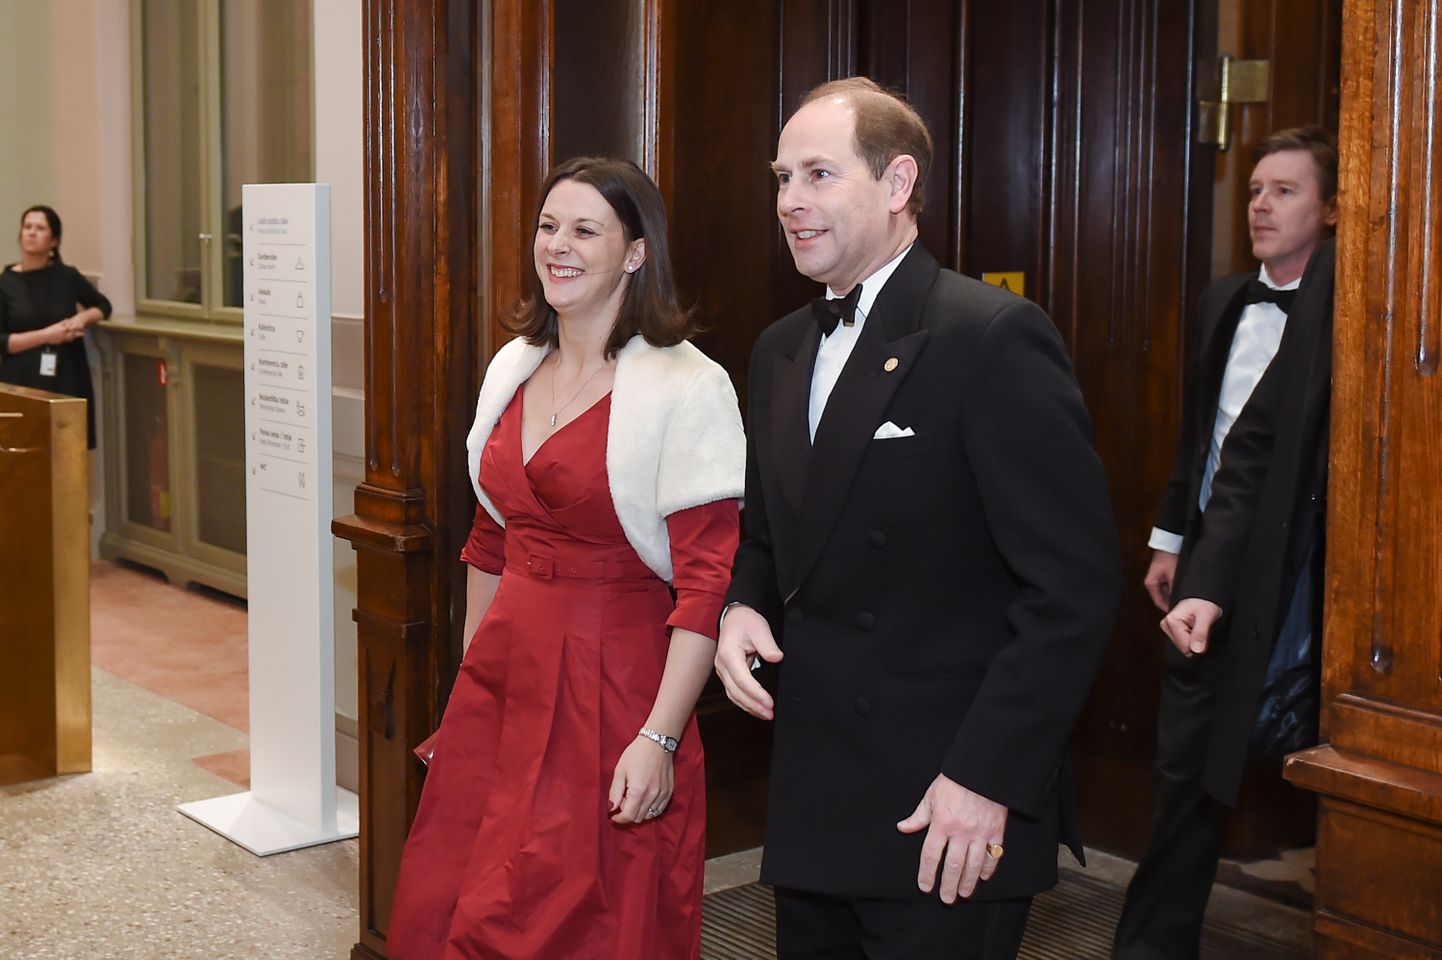 Veseksas grāfs princis Edvards ar kundzi ierodas uz Lielbritānijas tirdzniecības kameras Latvijā Gala vakariņām Latvijas Nacionālajā mākslas muzejā.